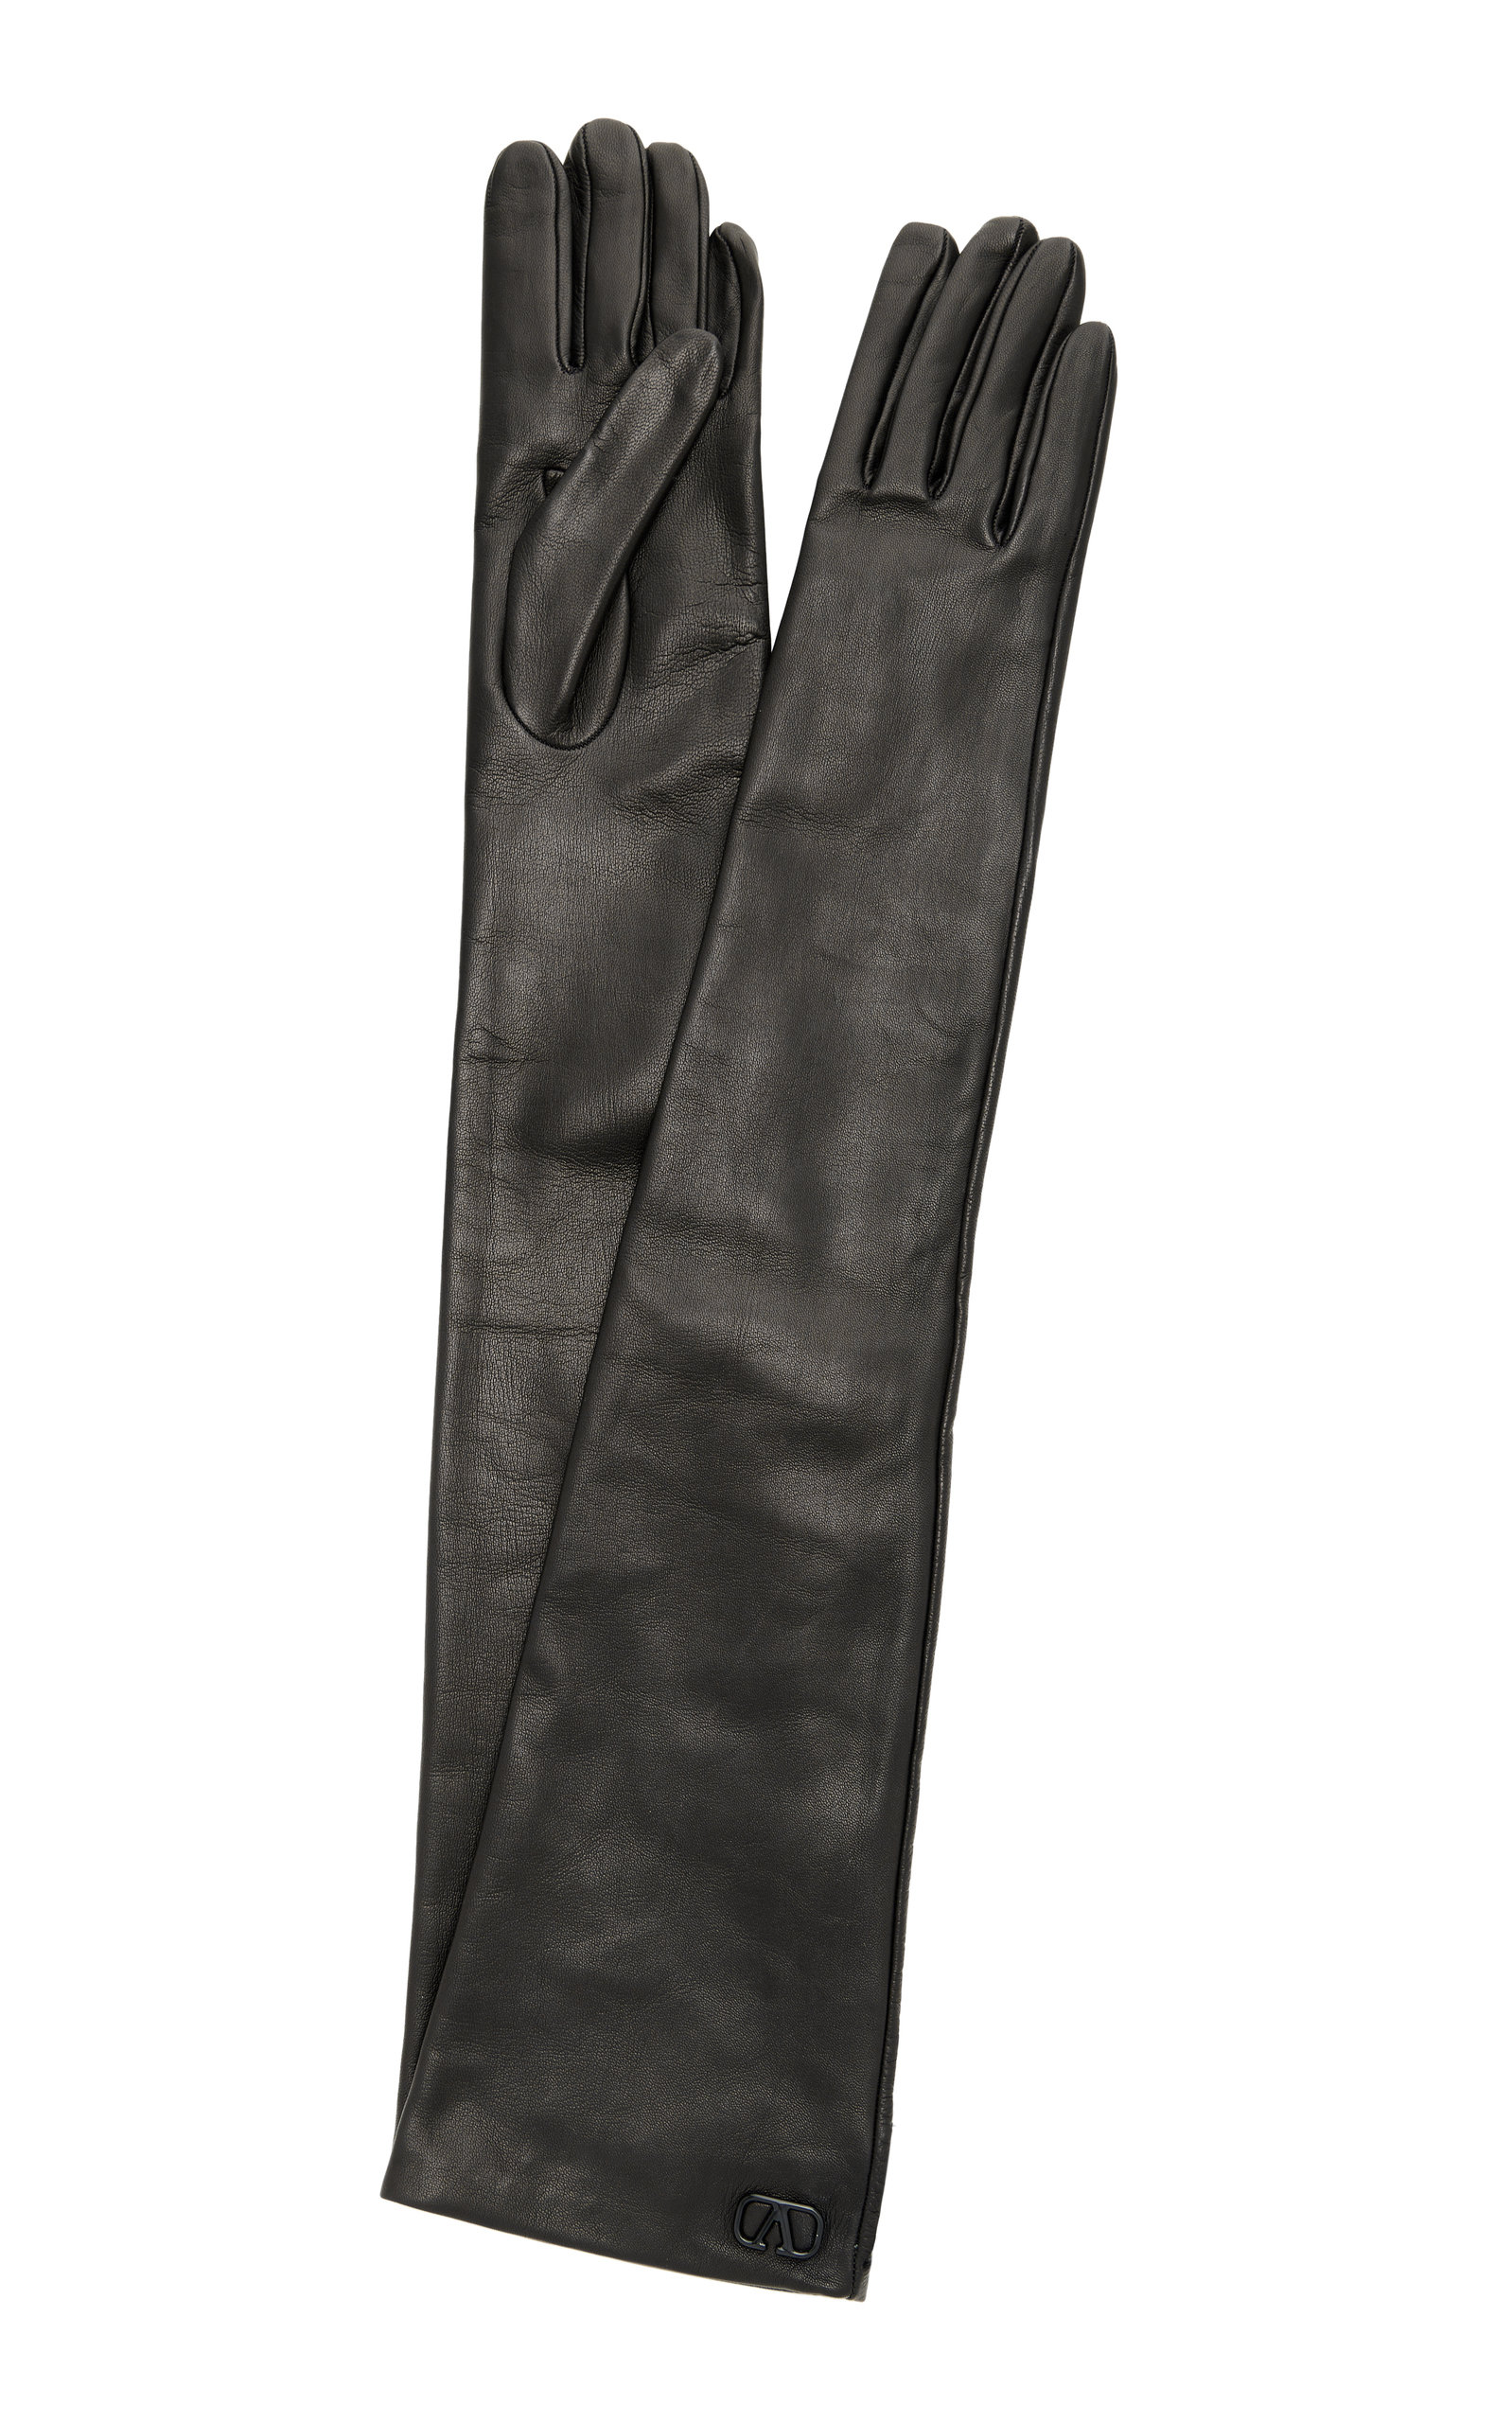 Valentino - Women's Valentino Garavani Vlogo Signature Leather Gloves - Black - 7 - Moda Operandi